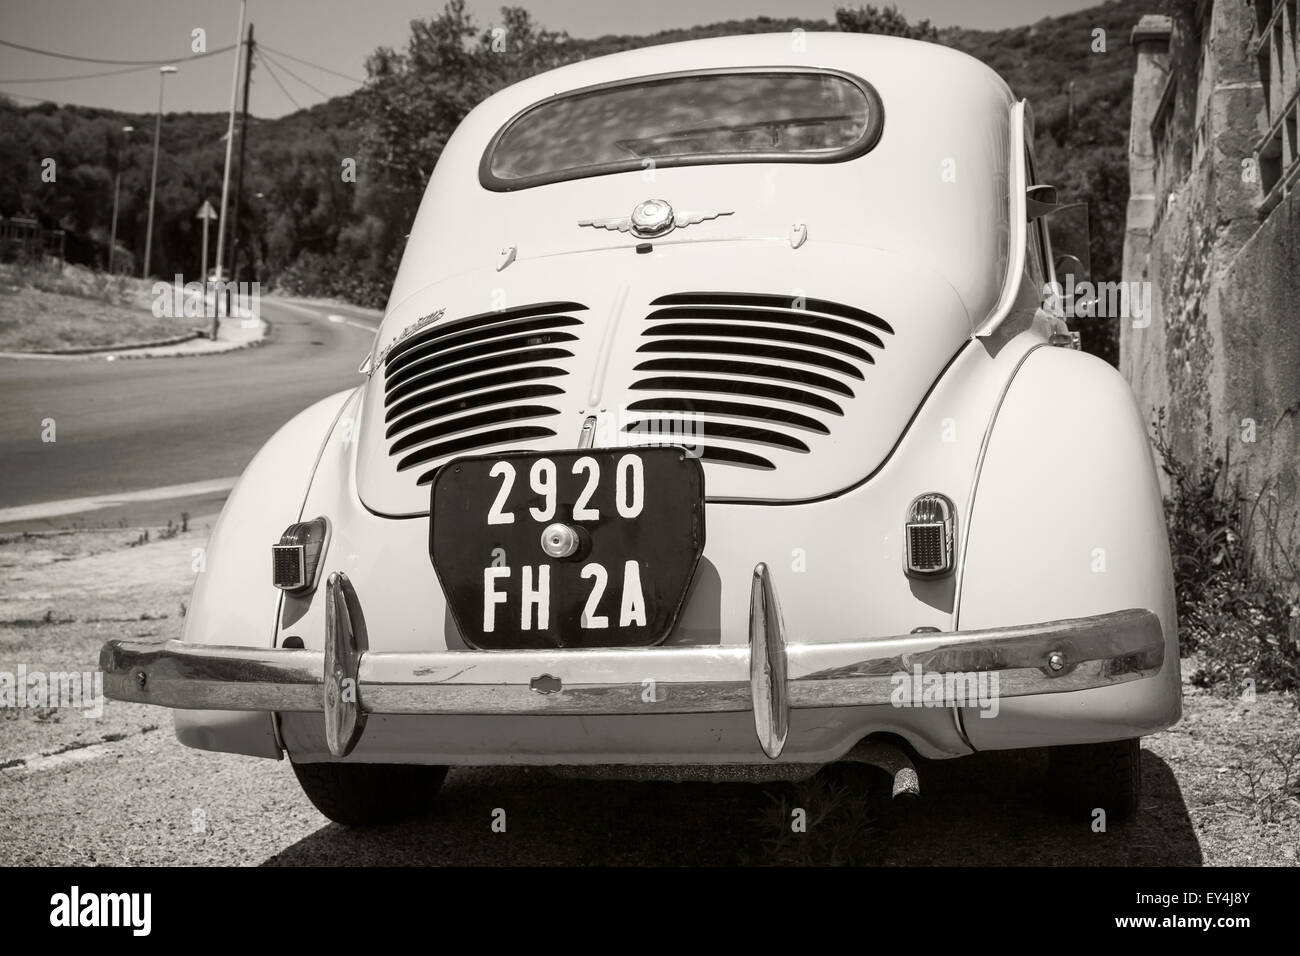 Ajaccio, Francia - luglio 6, 2015: Bianco Renault 4CV old-timer auto economia sta parcheggiato su una strada in città francese, close-up rea Foto Stock